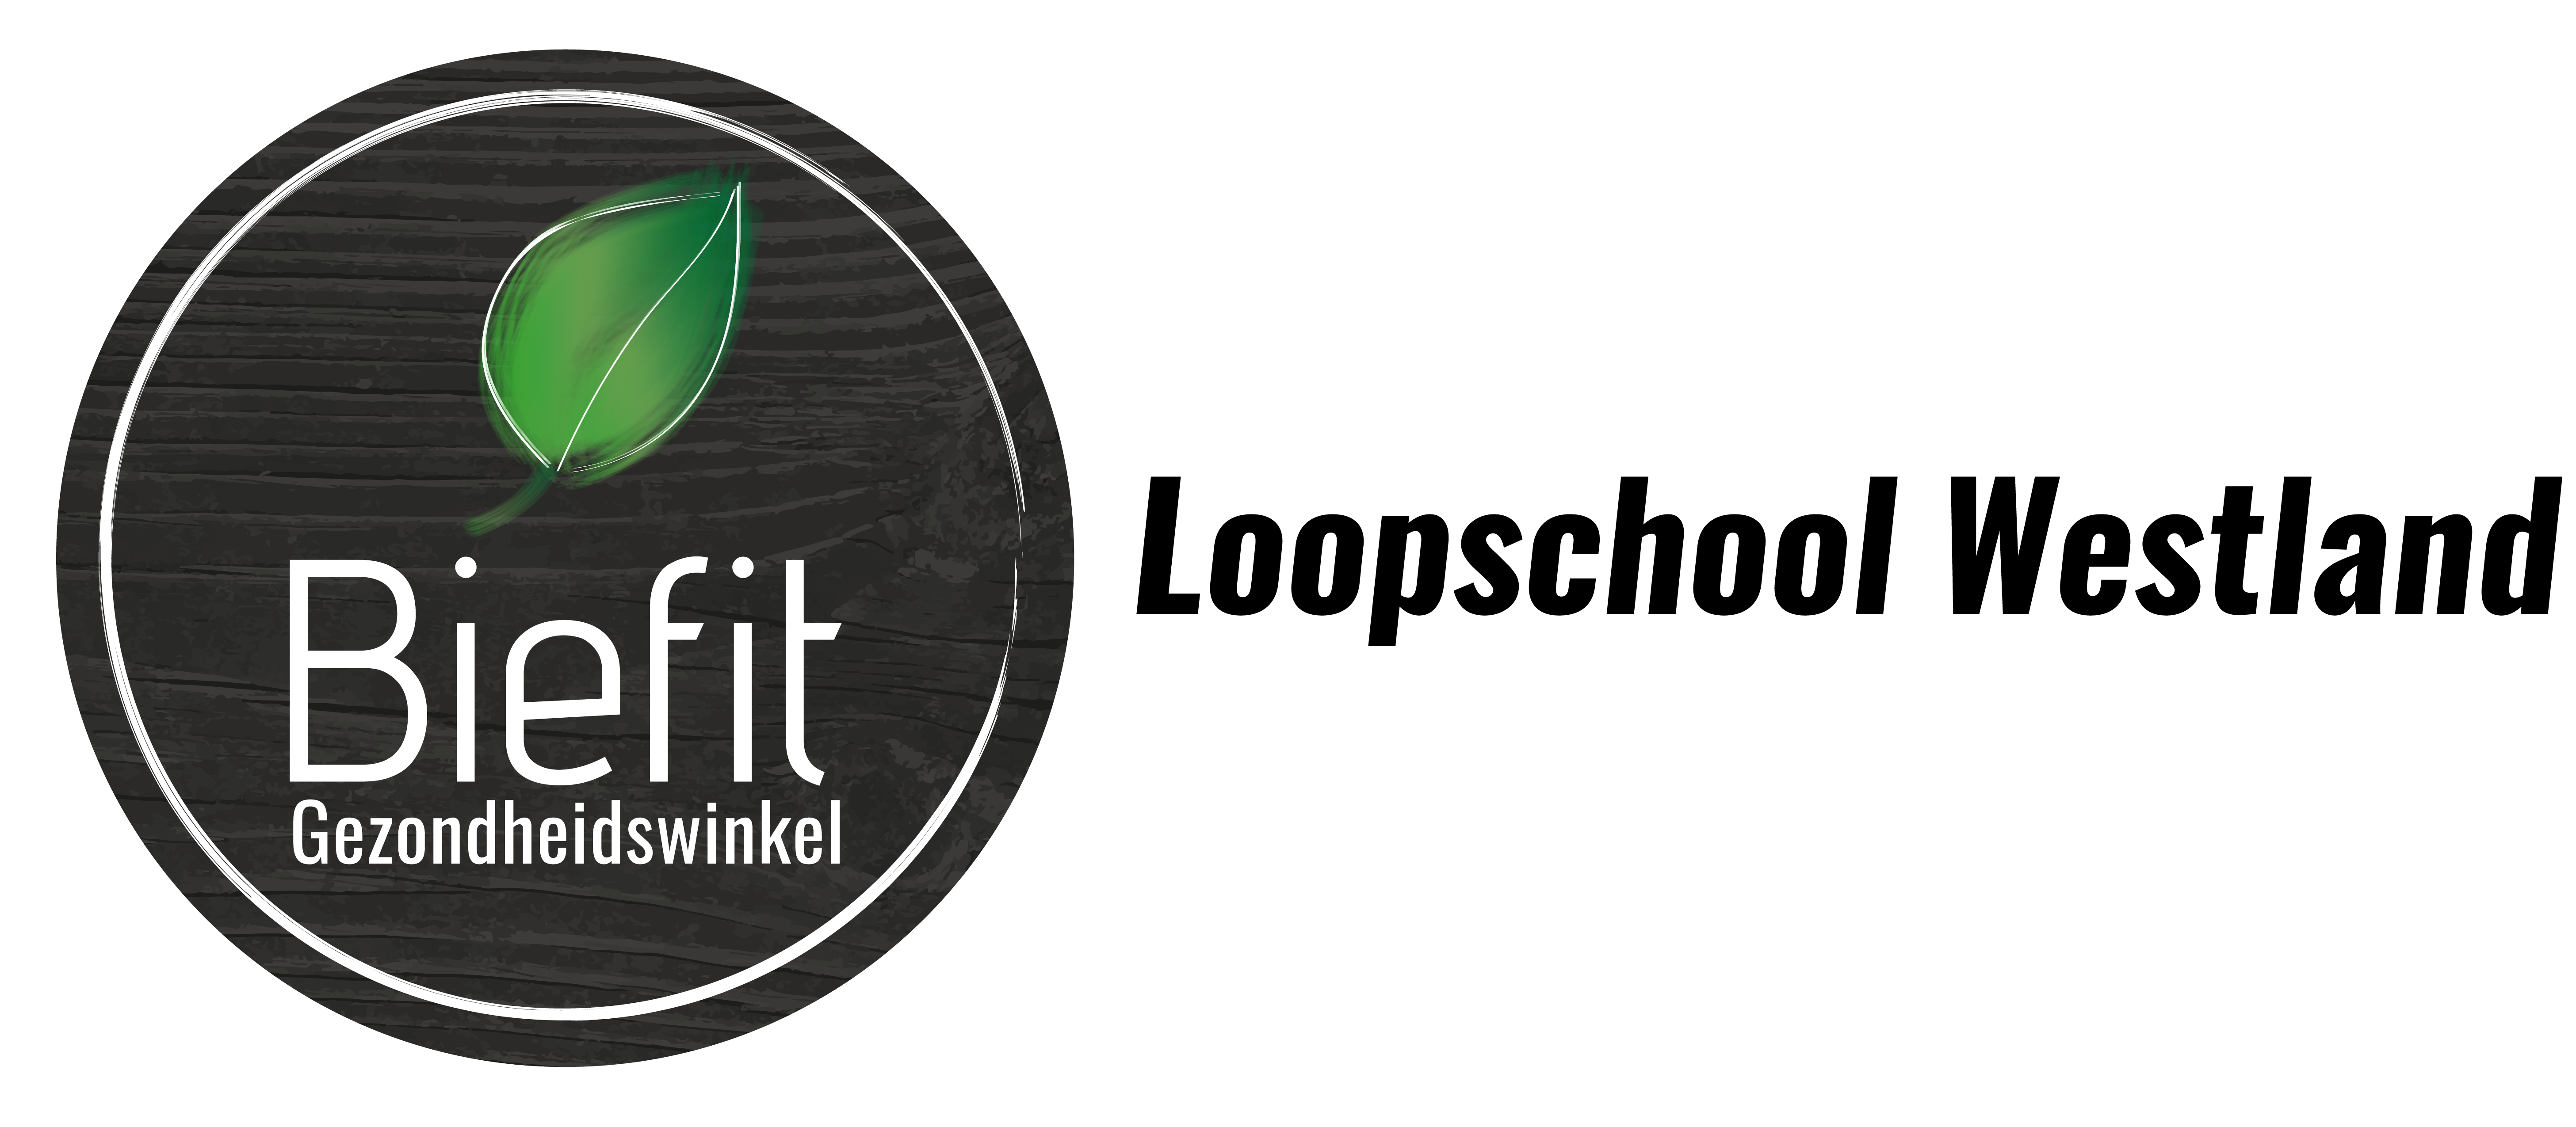 Biefit Loopschool Westland